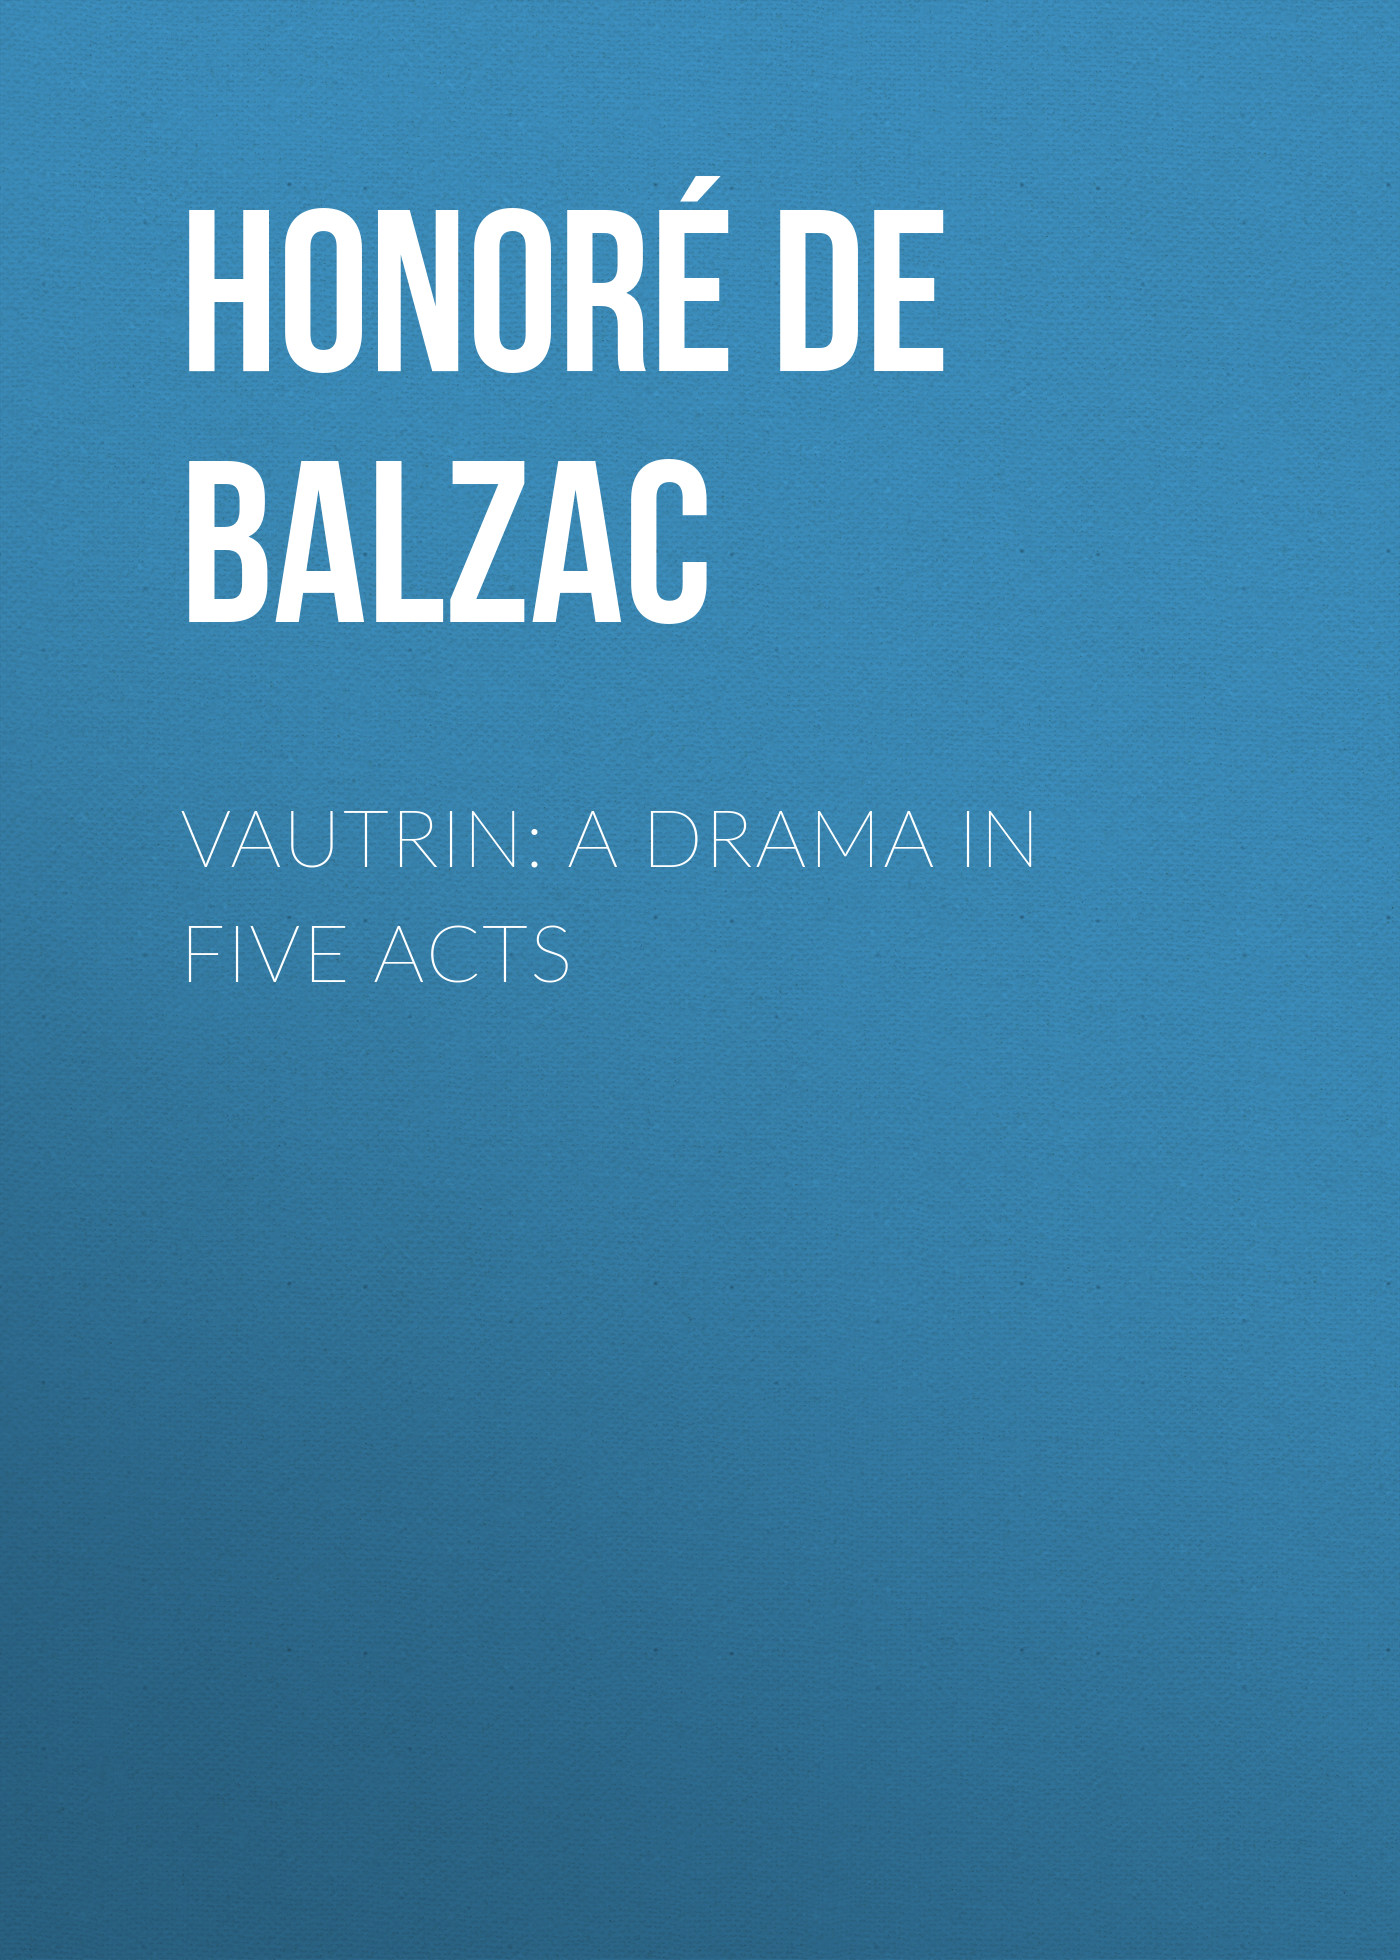 Книга Vautrin: A Drama in Five Acts из серии , созданная Honoré Balzac, может относится к жанру Литература 19 века, Зарубежная старинная литература, Зарубежная классика. Стоимость электронной книги Vautrin: A Drama in Five Acts с идентификатором 25019227 составляет 0 руб.